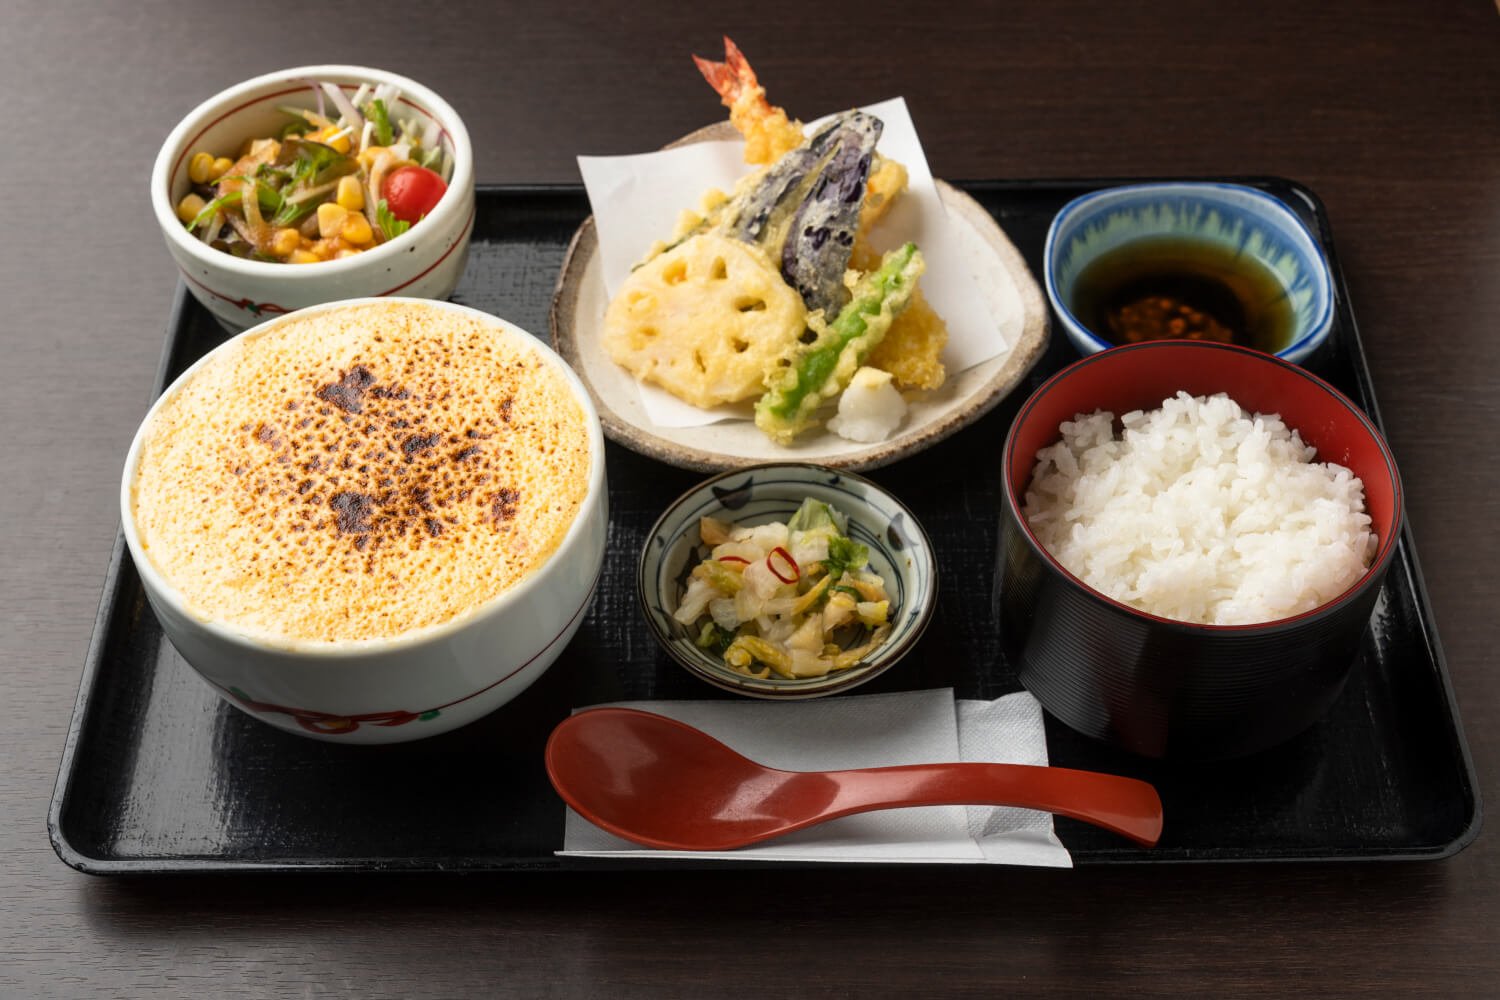 たまふわ杉農うどん御膳 1200円。御膳は天ぷら、サラダ、ご飯、漬物付き。契約農家でその日にとれた野菜を使っているので、サラダや天ぷらの味わいも抜かりなし。